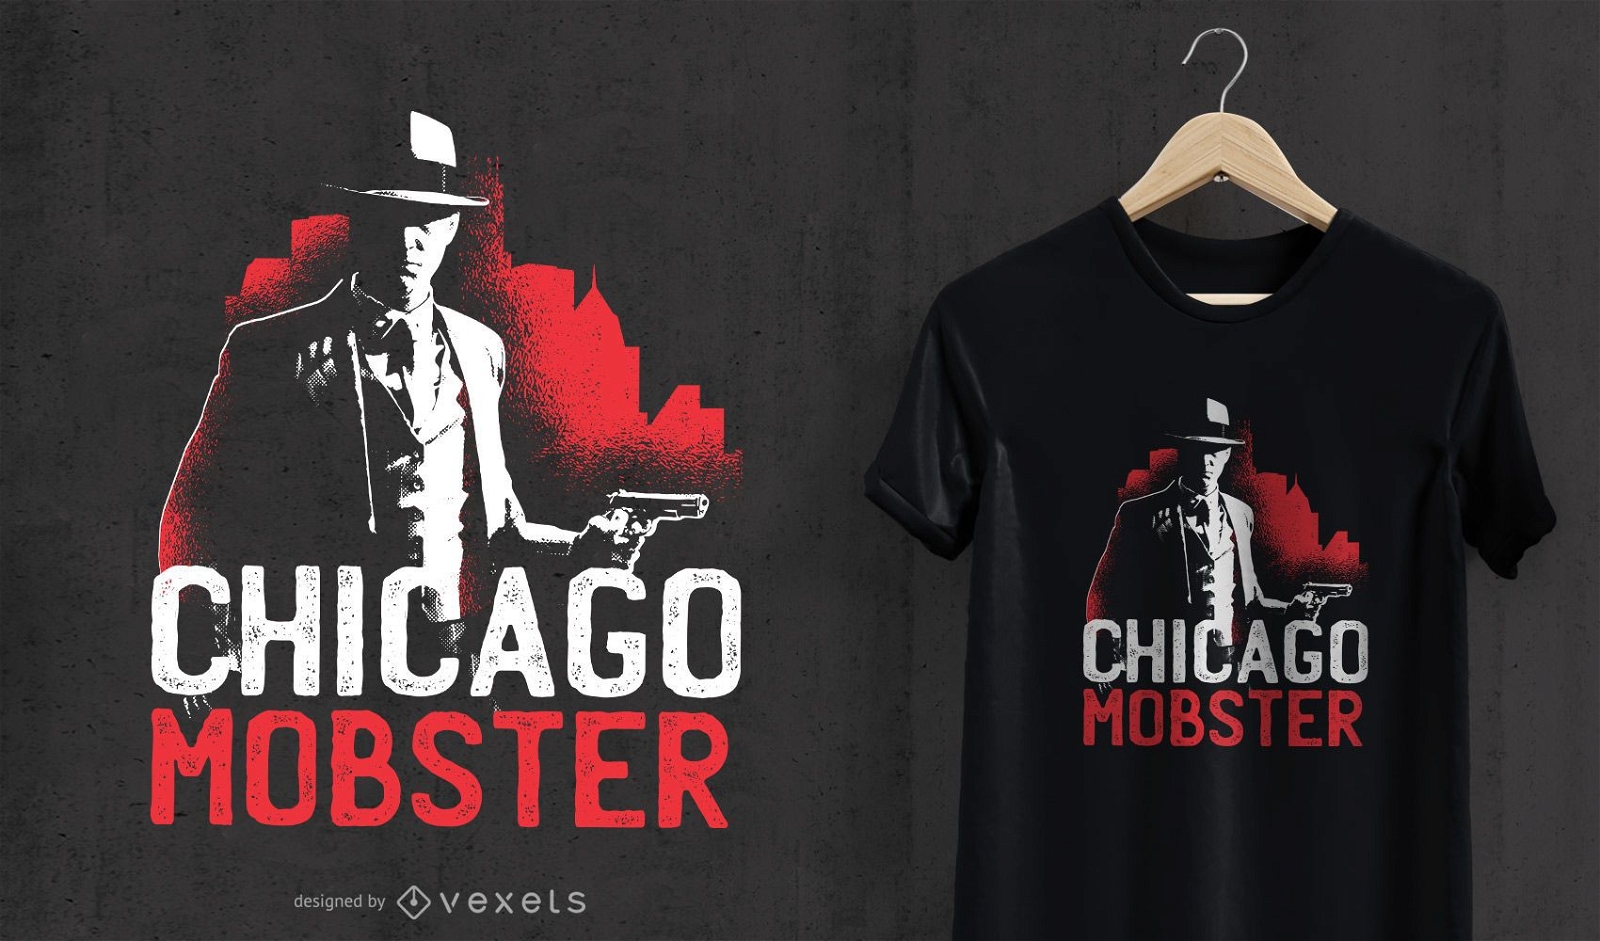 Chicago Mobster T-shirt Design